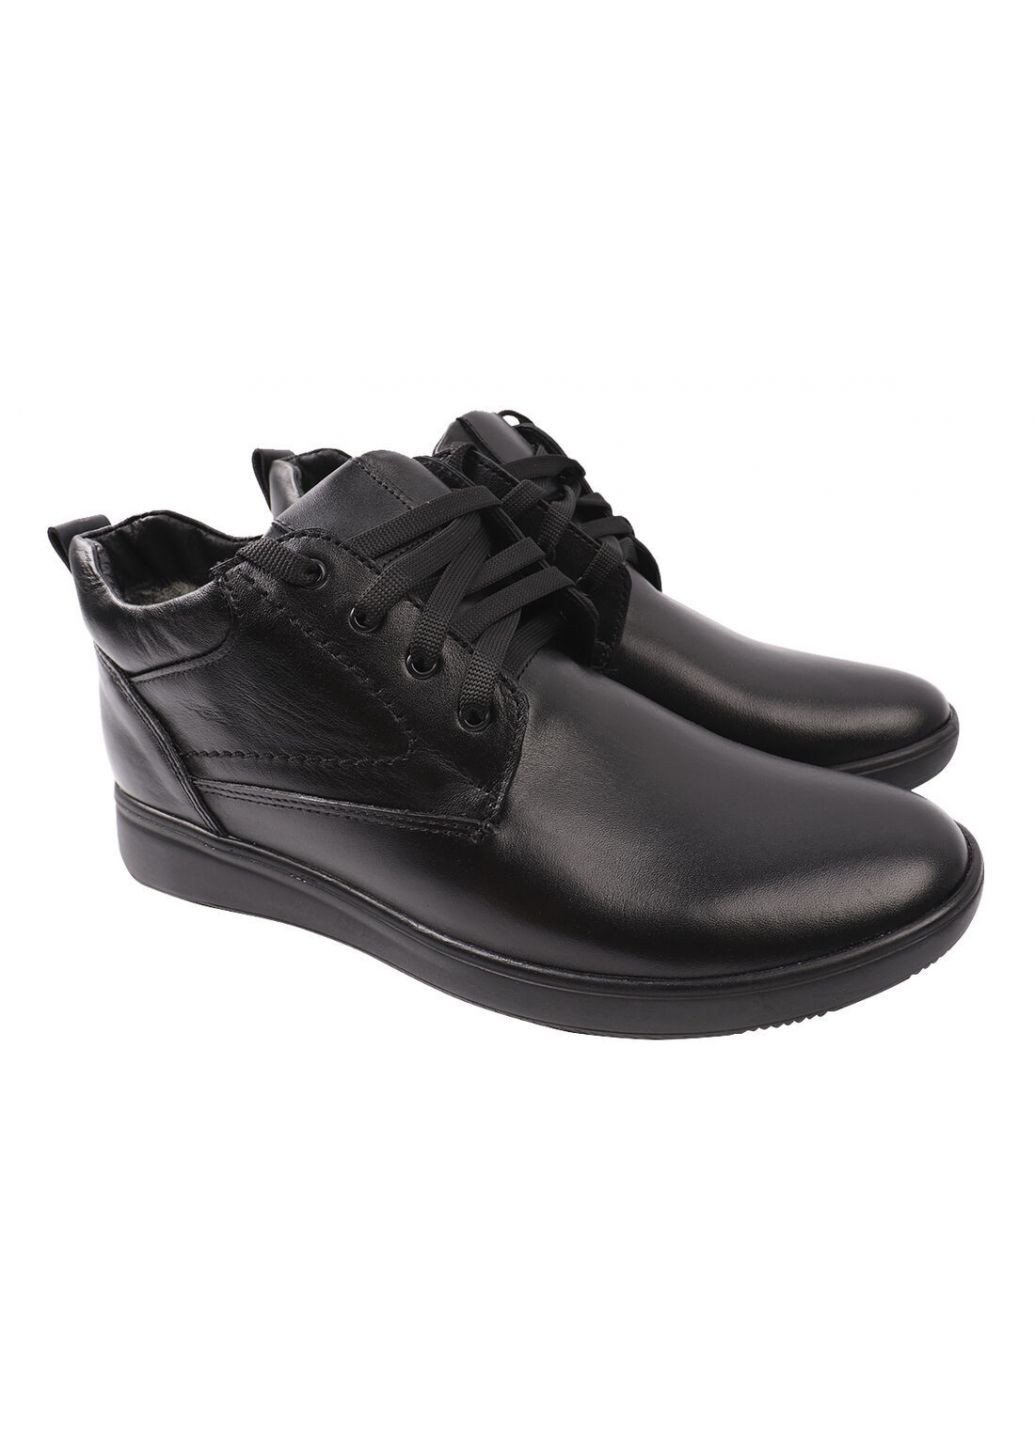 Черные ботинки мужские из натурально кожи,высокие,черные,украина VAN KRISTI